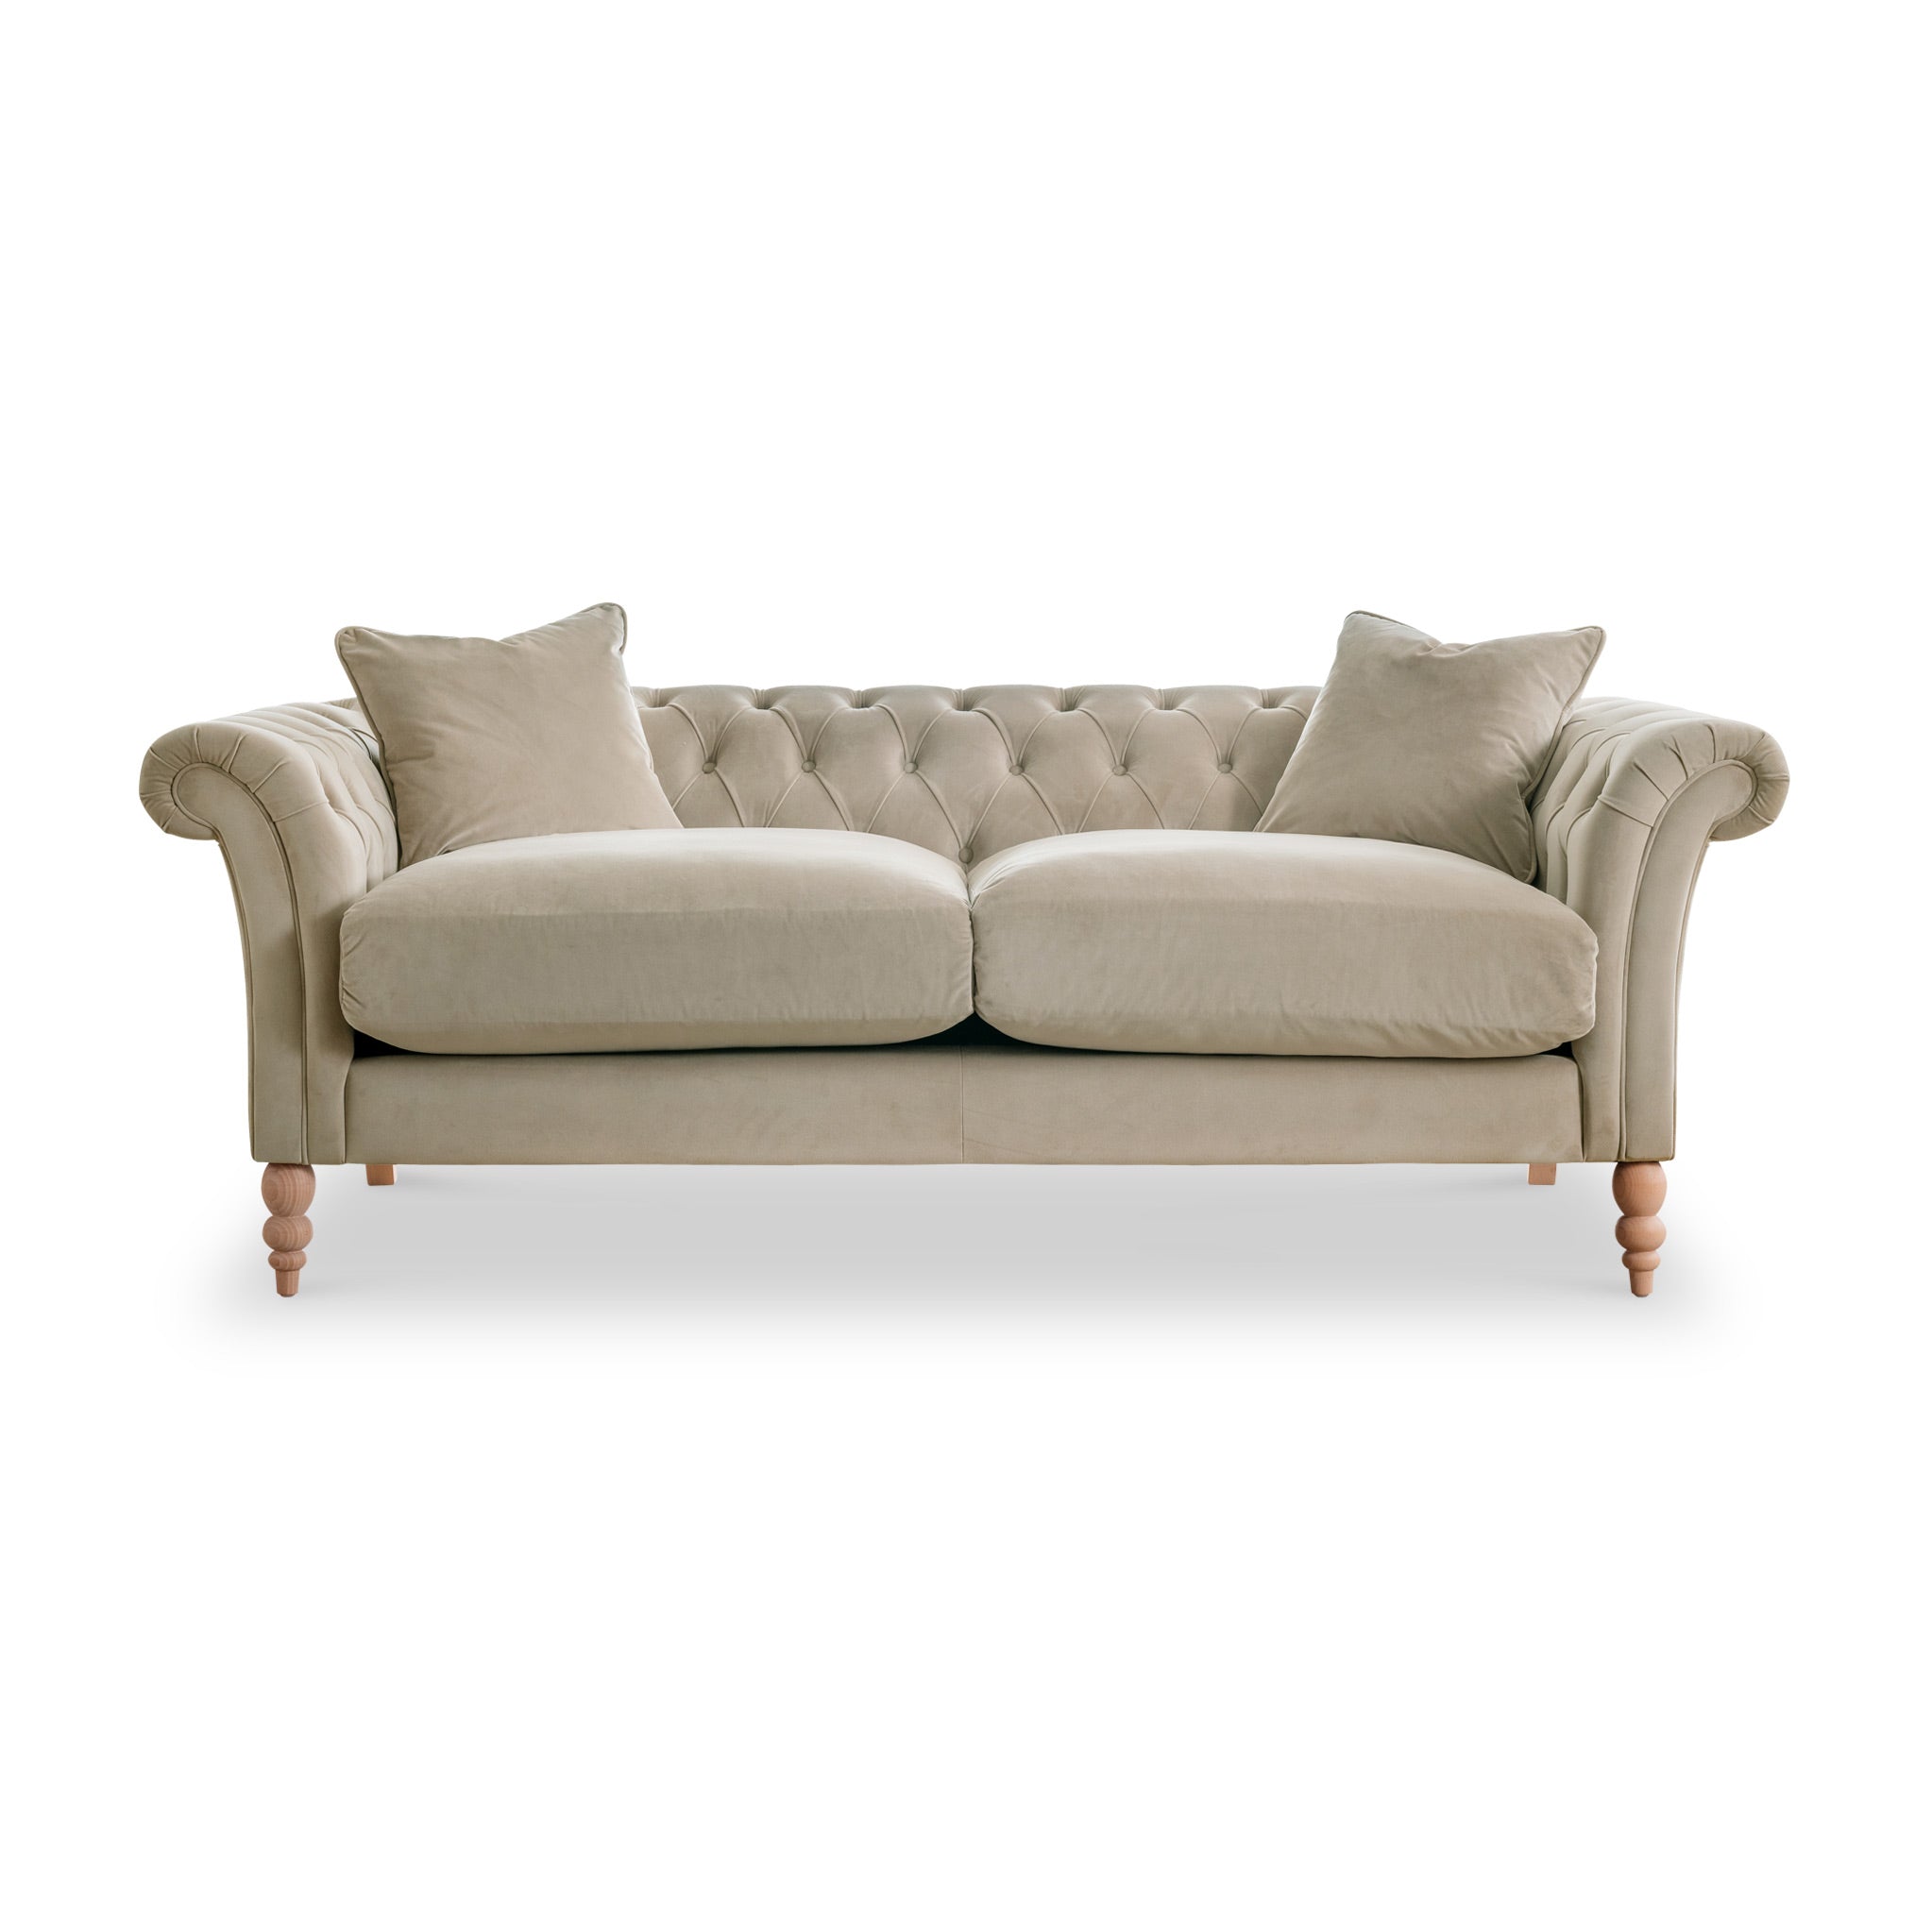 Balmoral Velvet Chesterfield 3 Seater Sofa 5 Colours Uk Made